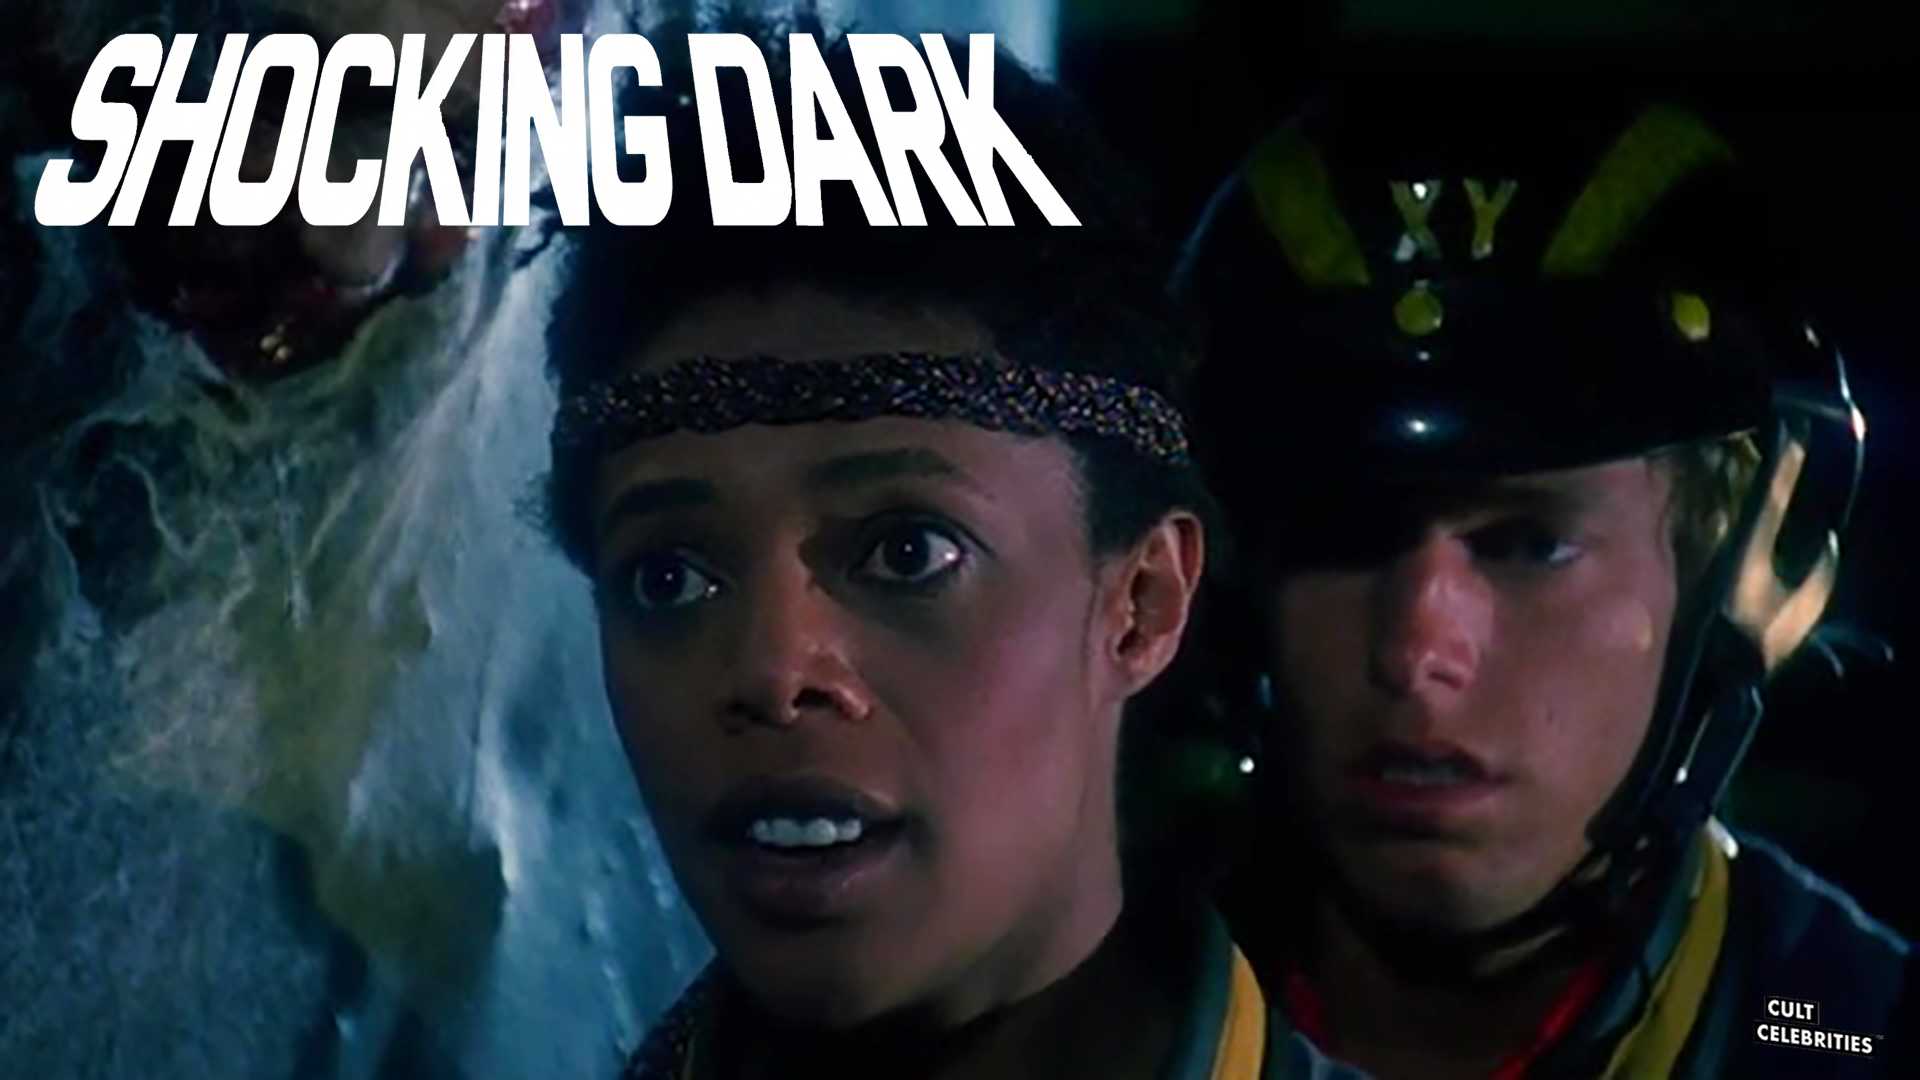 Shocking Dark (1989)